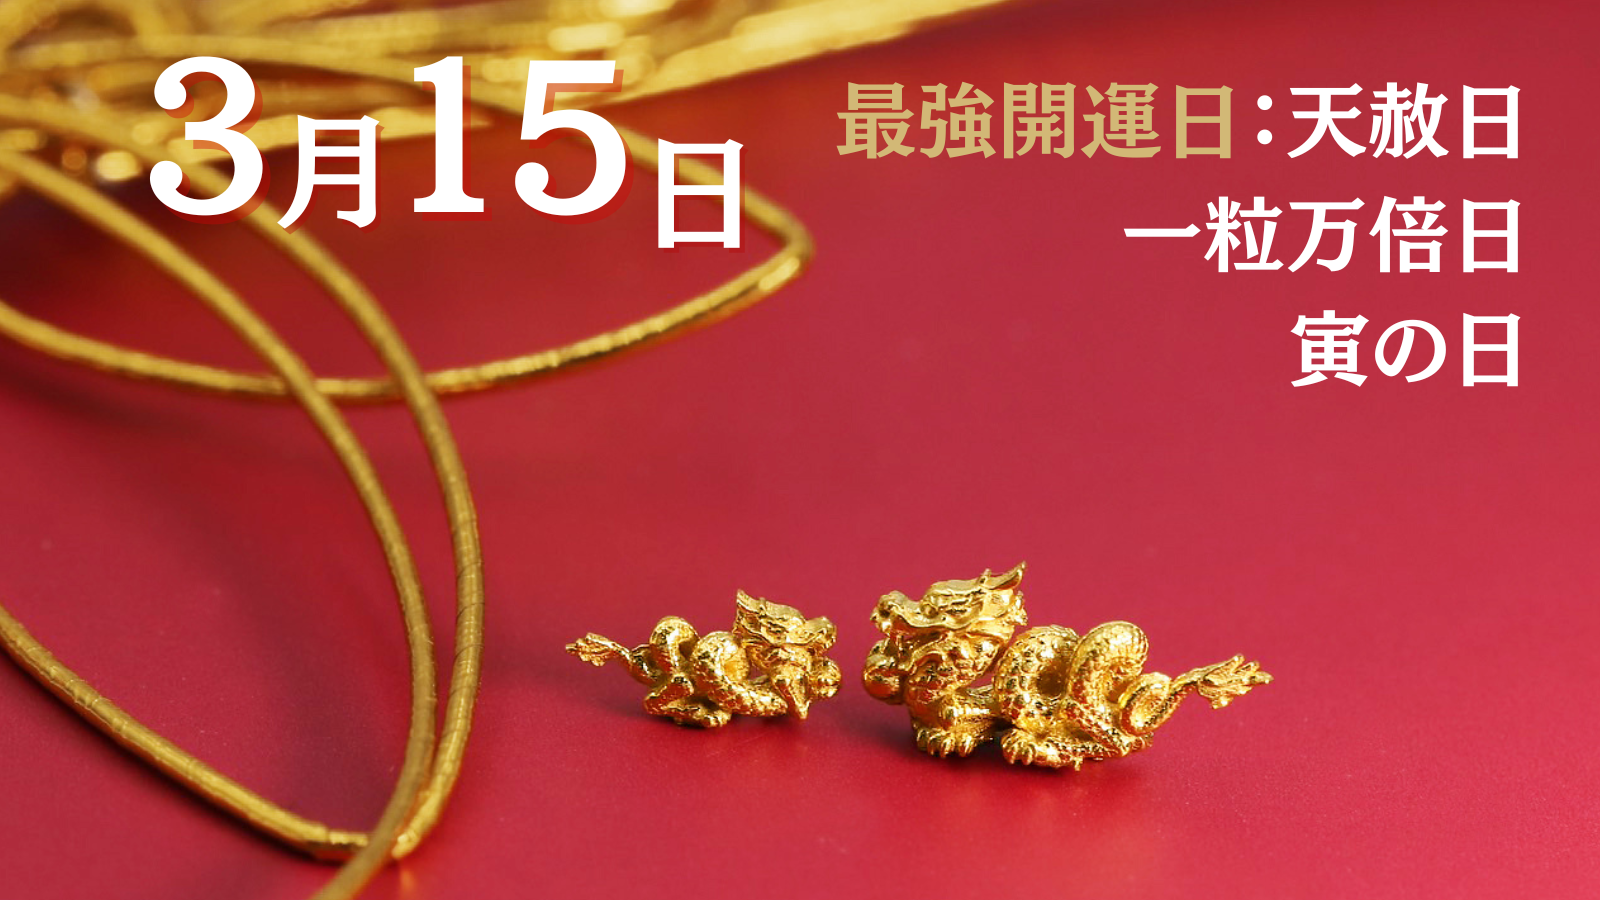 【金の龍の世界】「辰年だから」だけではない。ここでしか買えない「金の龍」。純金ブランドの“JUNGO